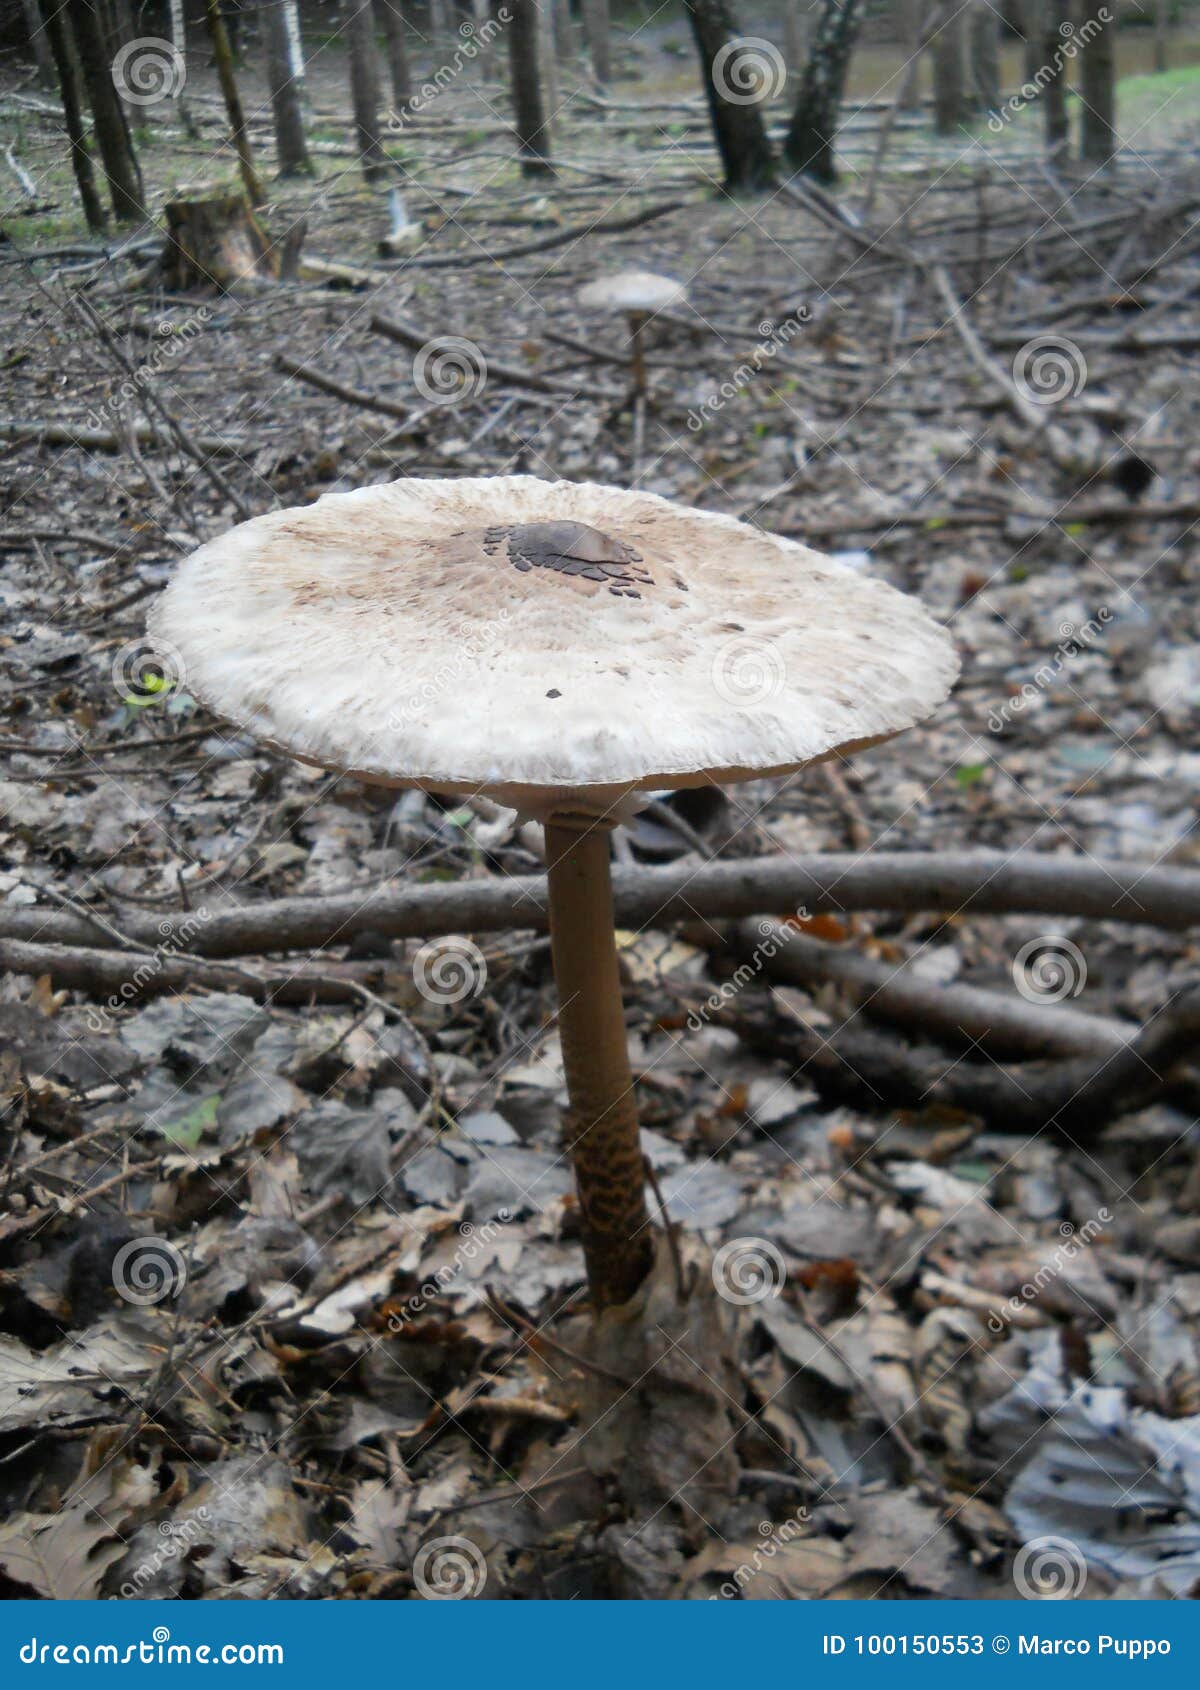 mushroom: macrolepiota procera